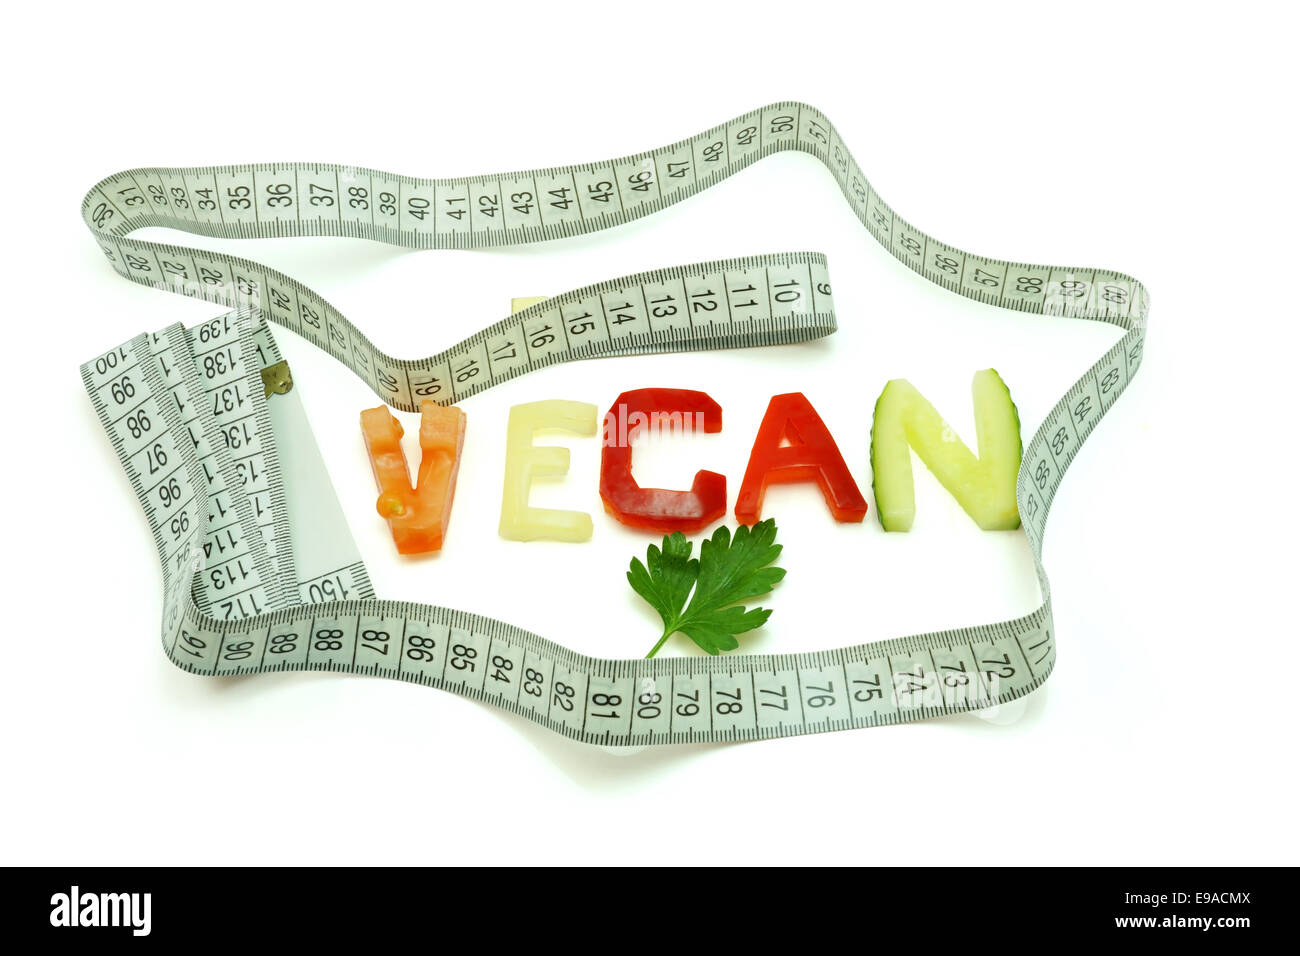 Mot vegan composé de tranches de légumes différents avec ruban à mesurer sur fond blanc. Régime végétalien Banque D'Images